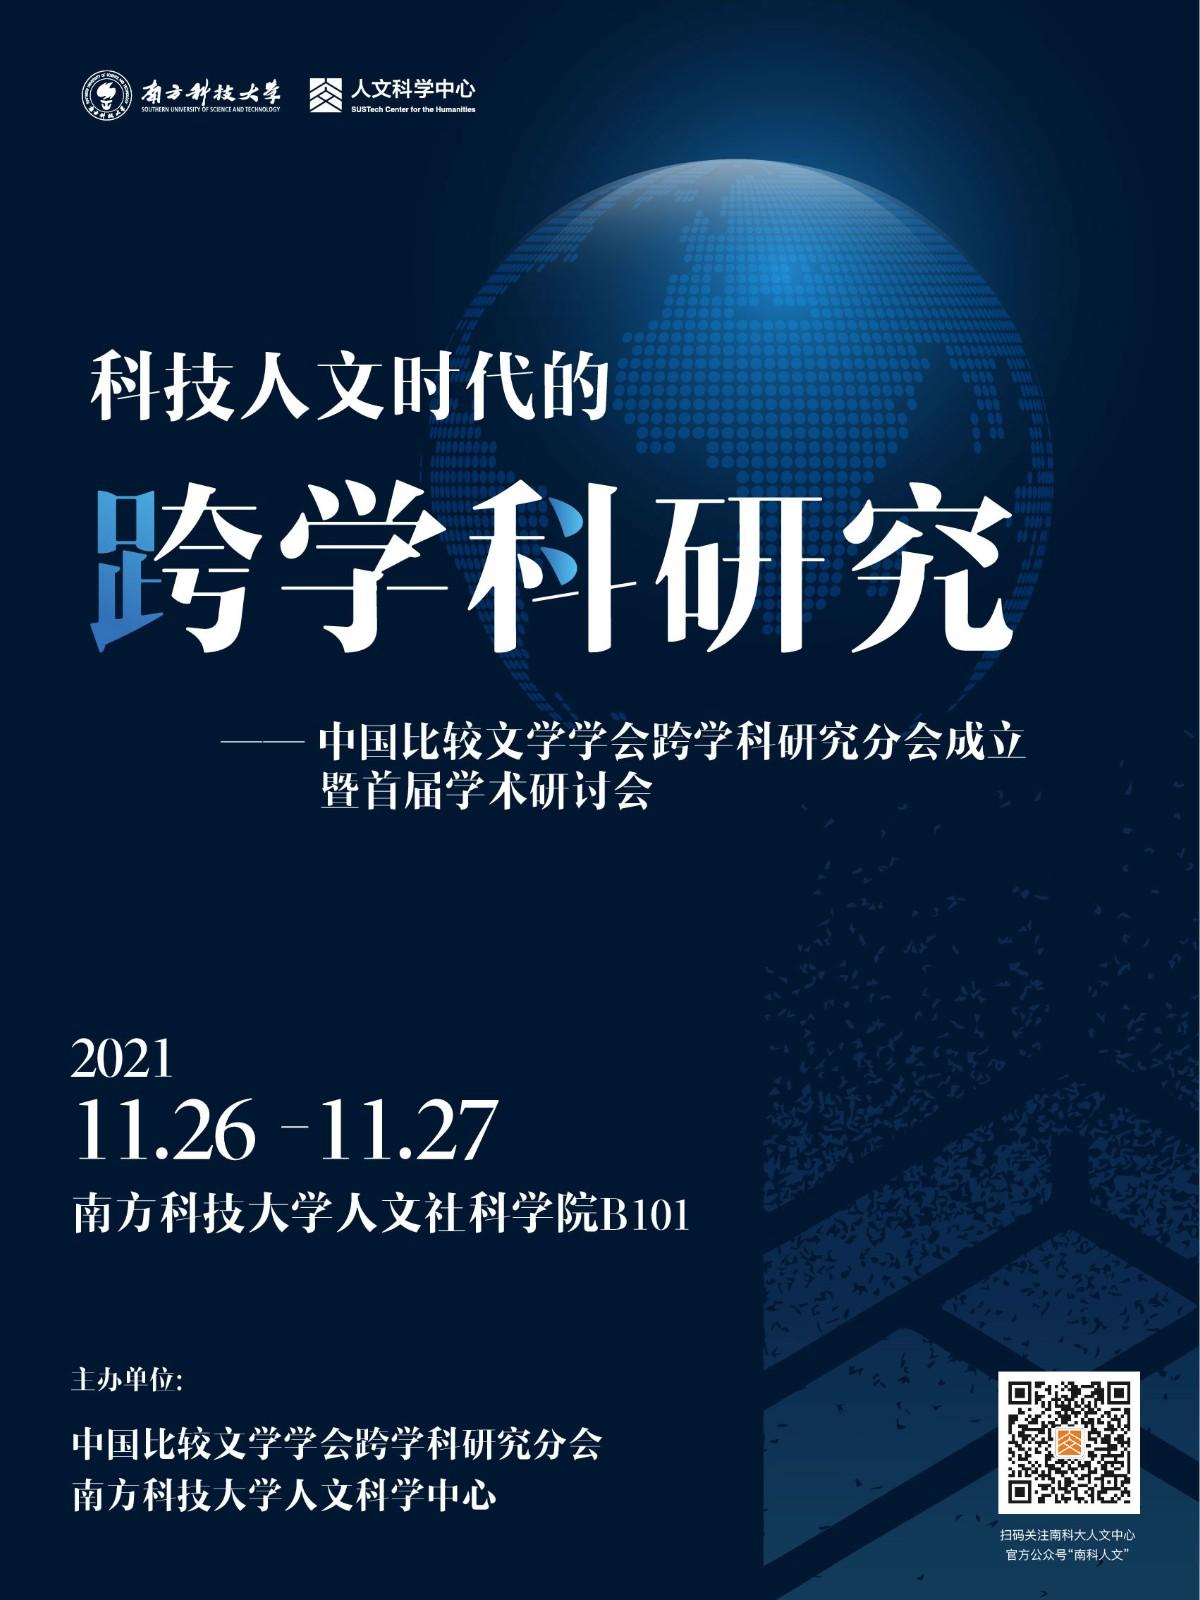 科技人文时代的跨学科研究——中国比较文学学会跨学科研究分会成立暨首届学术研讨会.jpg